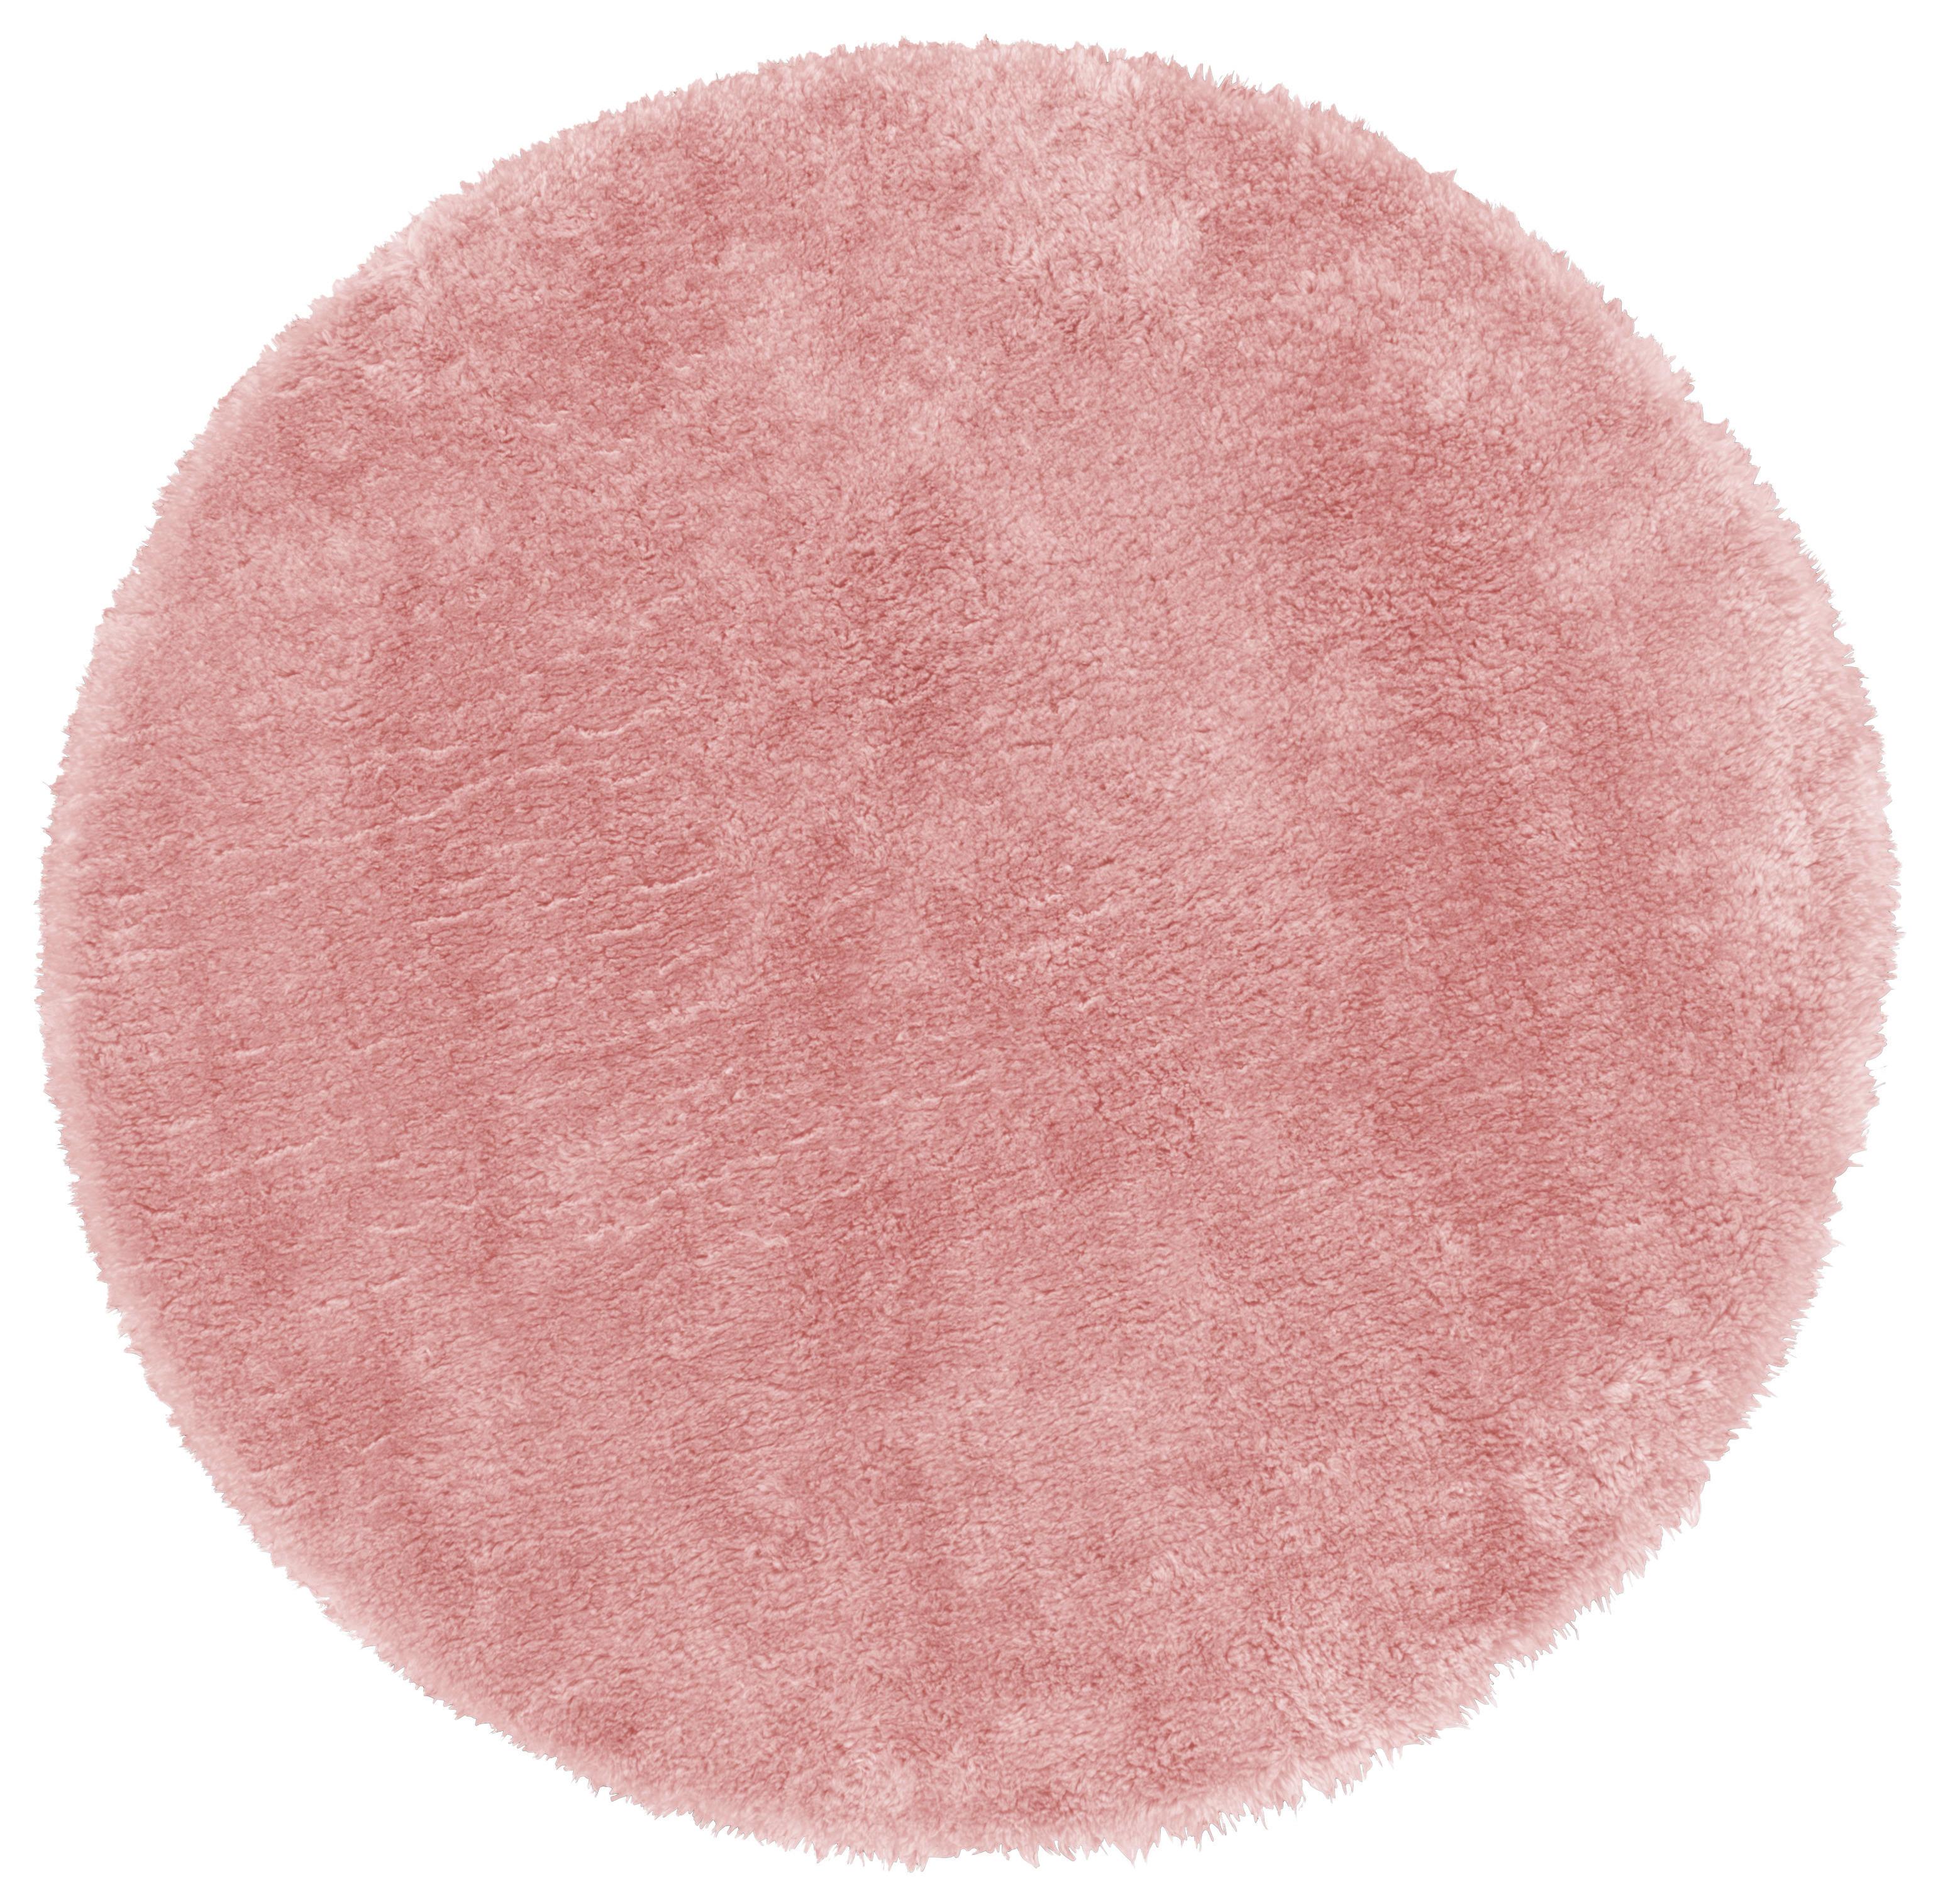 Fellimitat Fellimitat rosa B/L: ca. 120x120 cm Fellimitat - rosa (120,00/120,00cm)